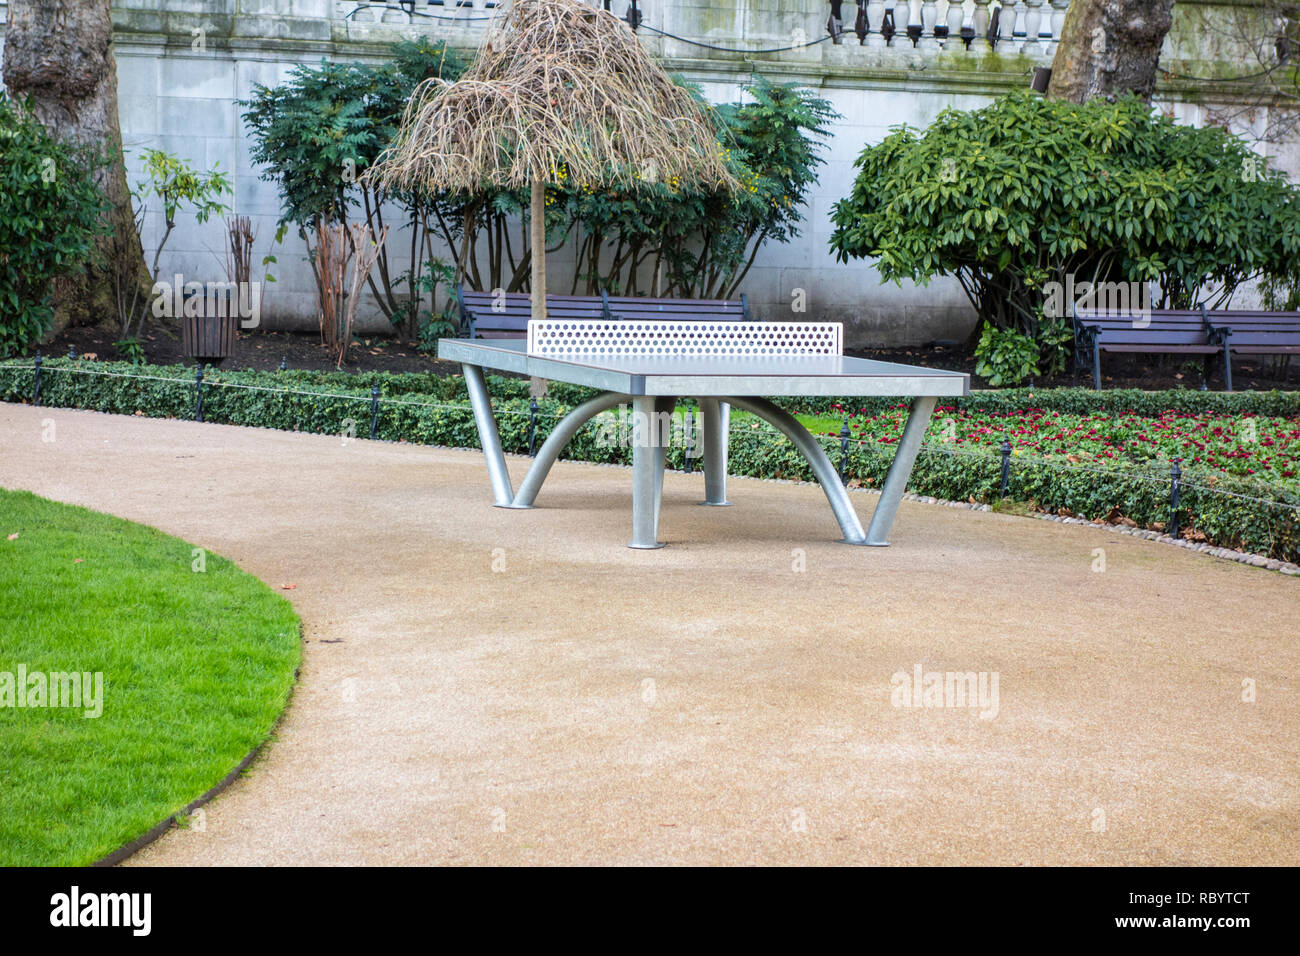 Table de ping-pong en plein air à Victoria Embankment Gardens, London, UK Banque D'Images